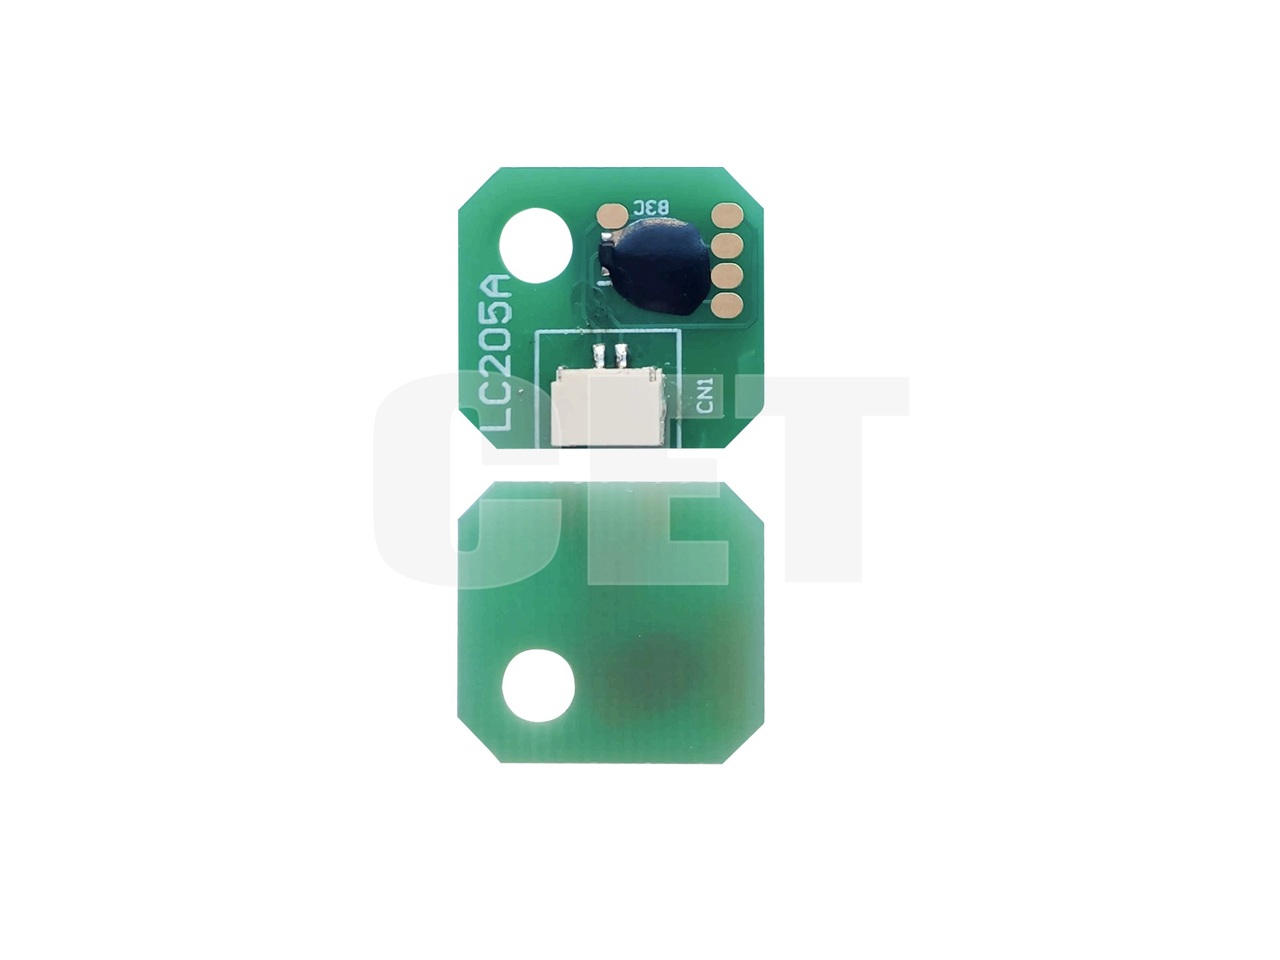 Чип фьюзера FM1-R519-Card для CANON iR ADVANCE DXC5840i (CET), 360000 стр., CET461010